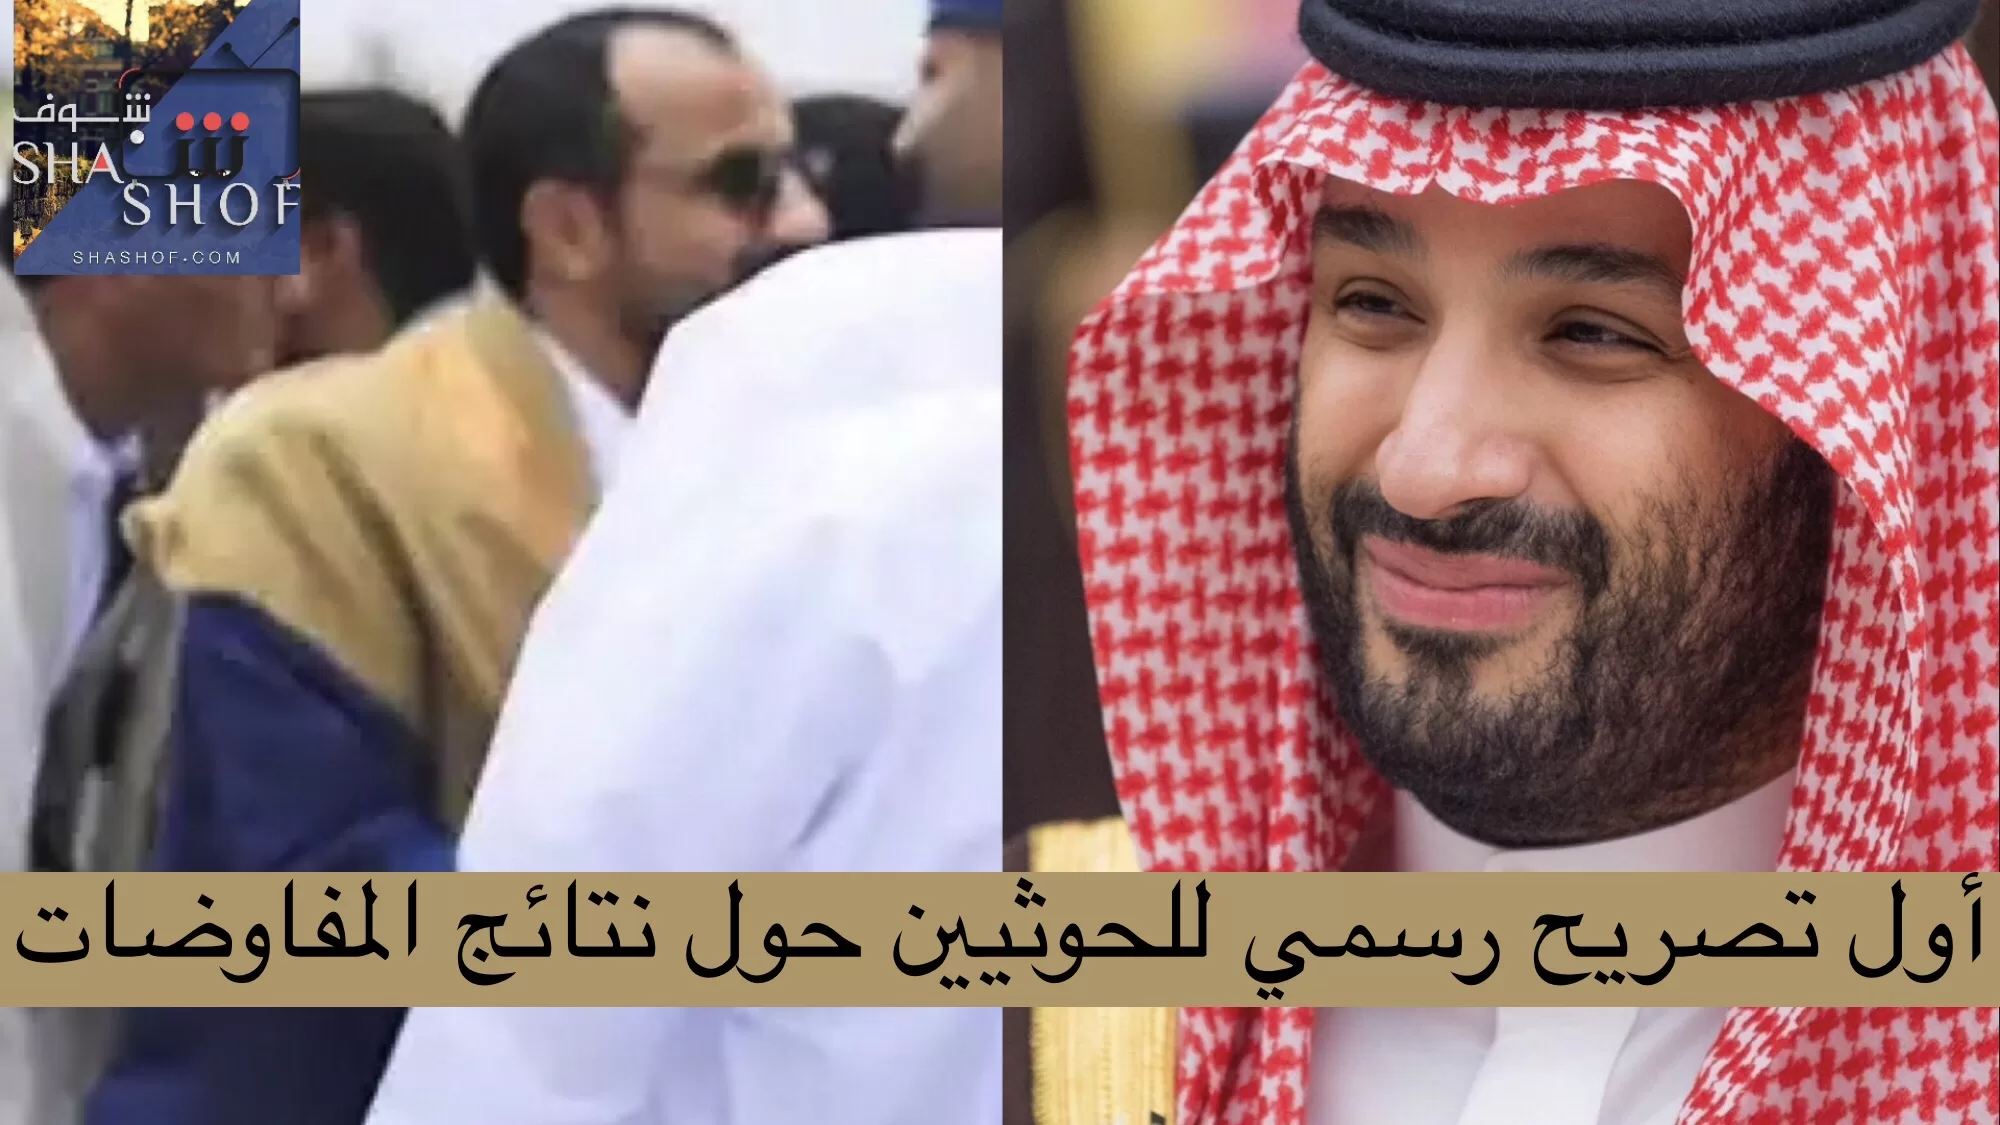 رئيس وفد صنعاء محمد عبدالسلام يبشر الشعب بأخبار ايجابية عن مفاوضات الرياض